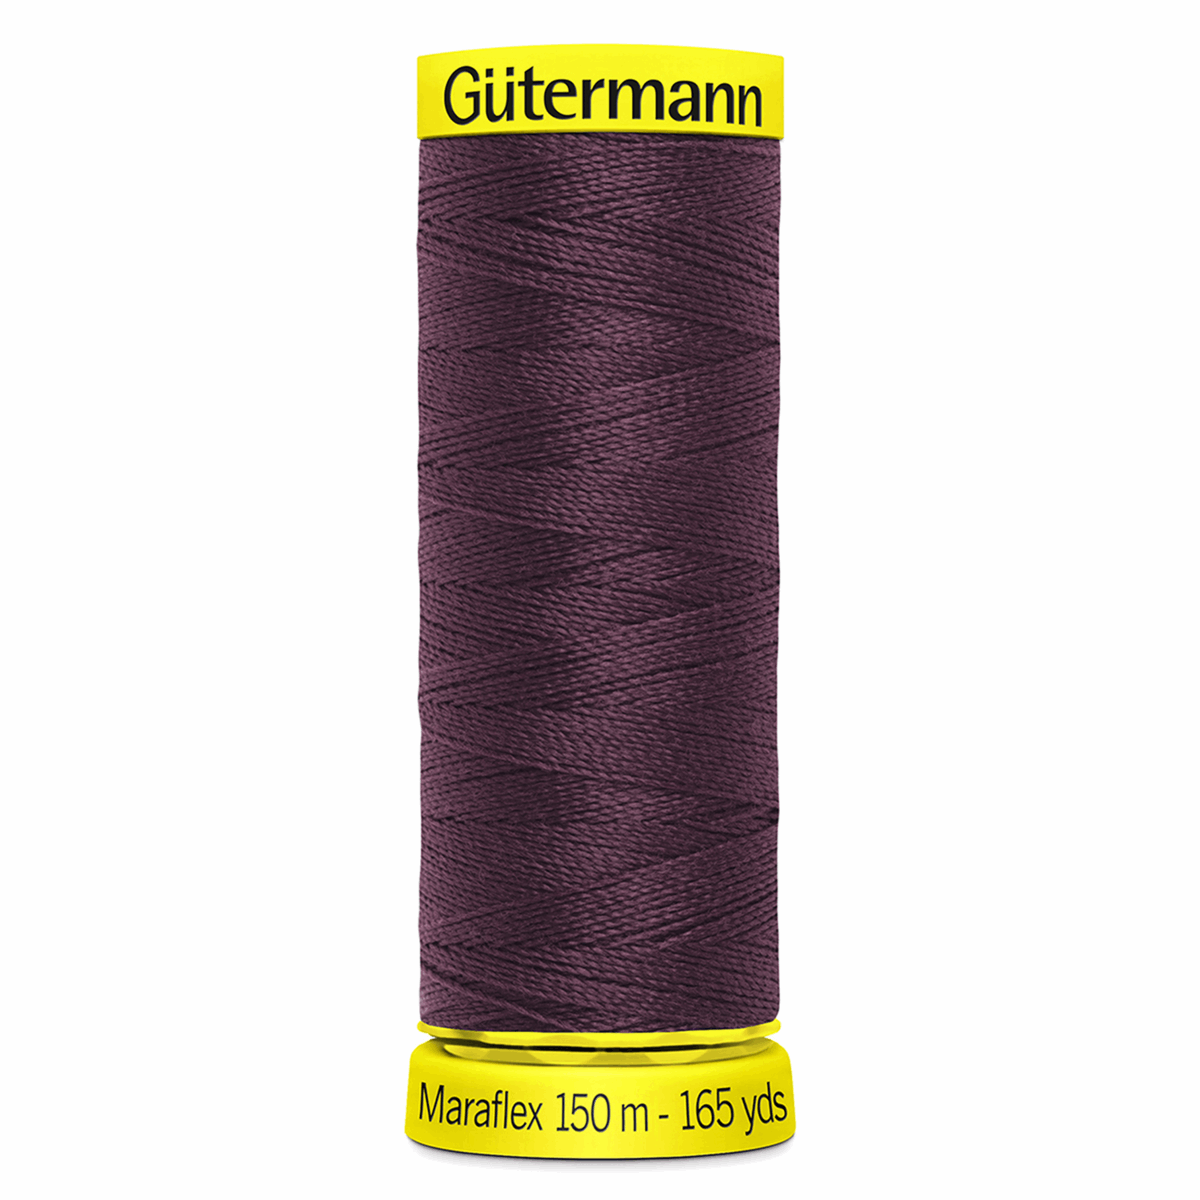 Gutermann Maraflex Elastic Sewing Thread 150m Burgundy 130